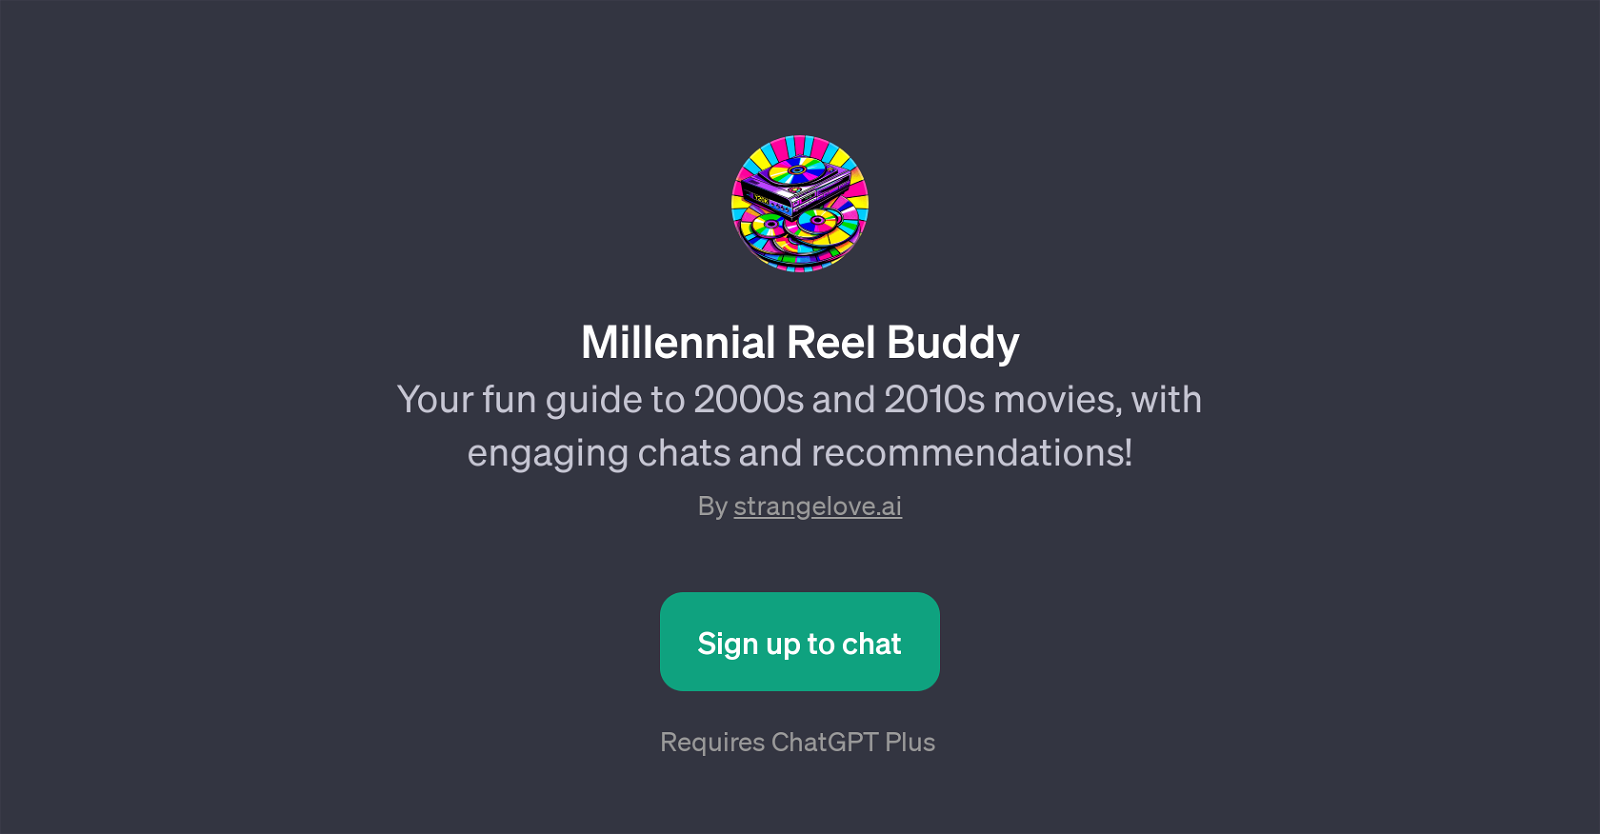 Millennial Reel Buddy website